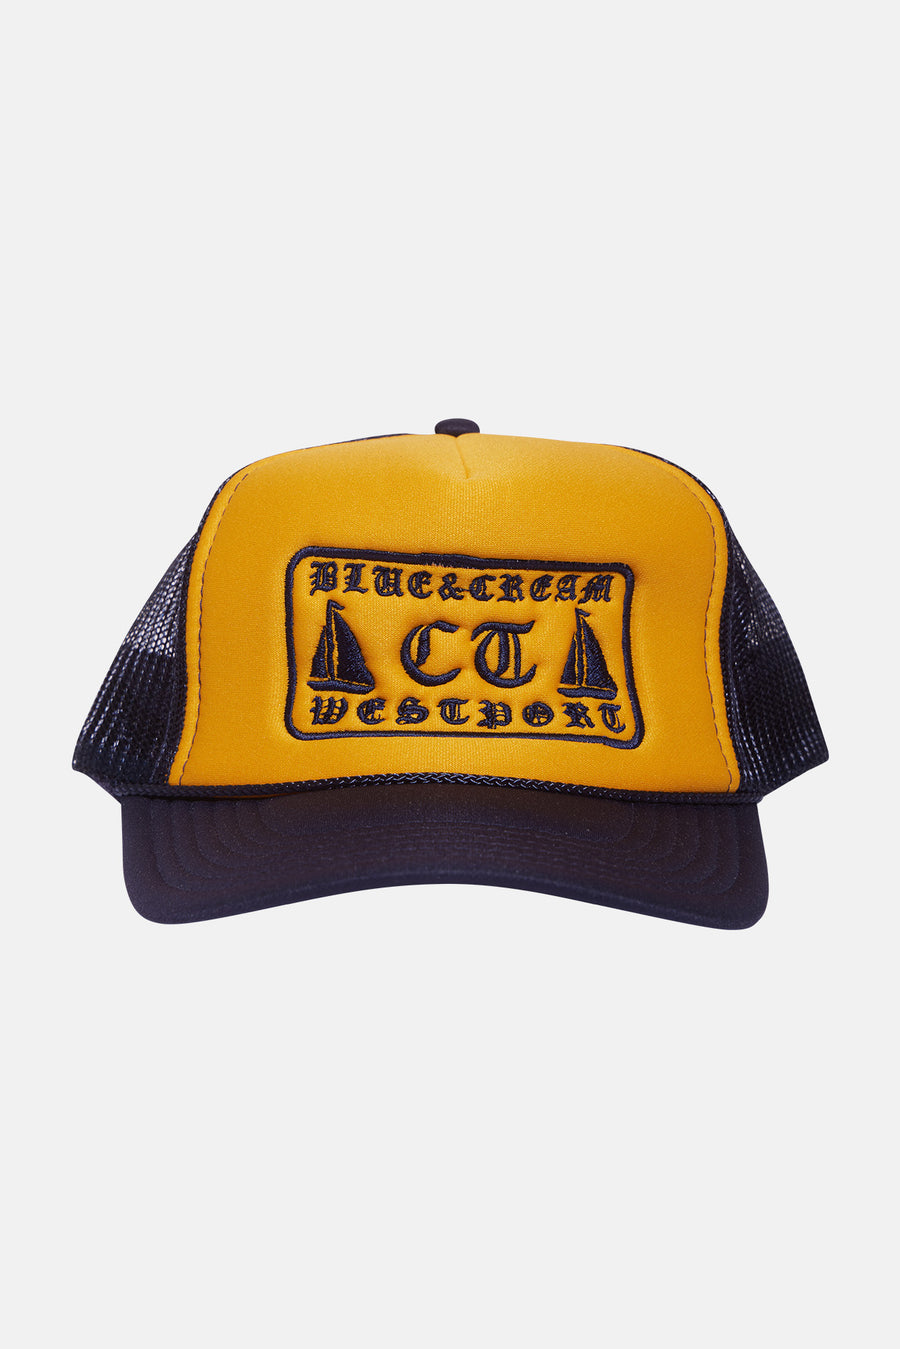 Westport Mesh Trucker Hat Navy/Yellow